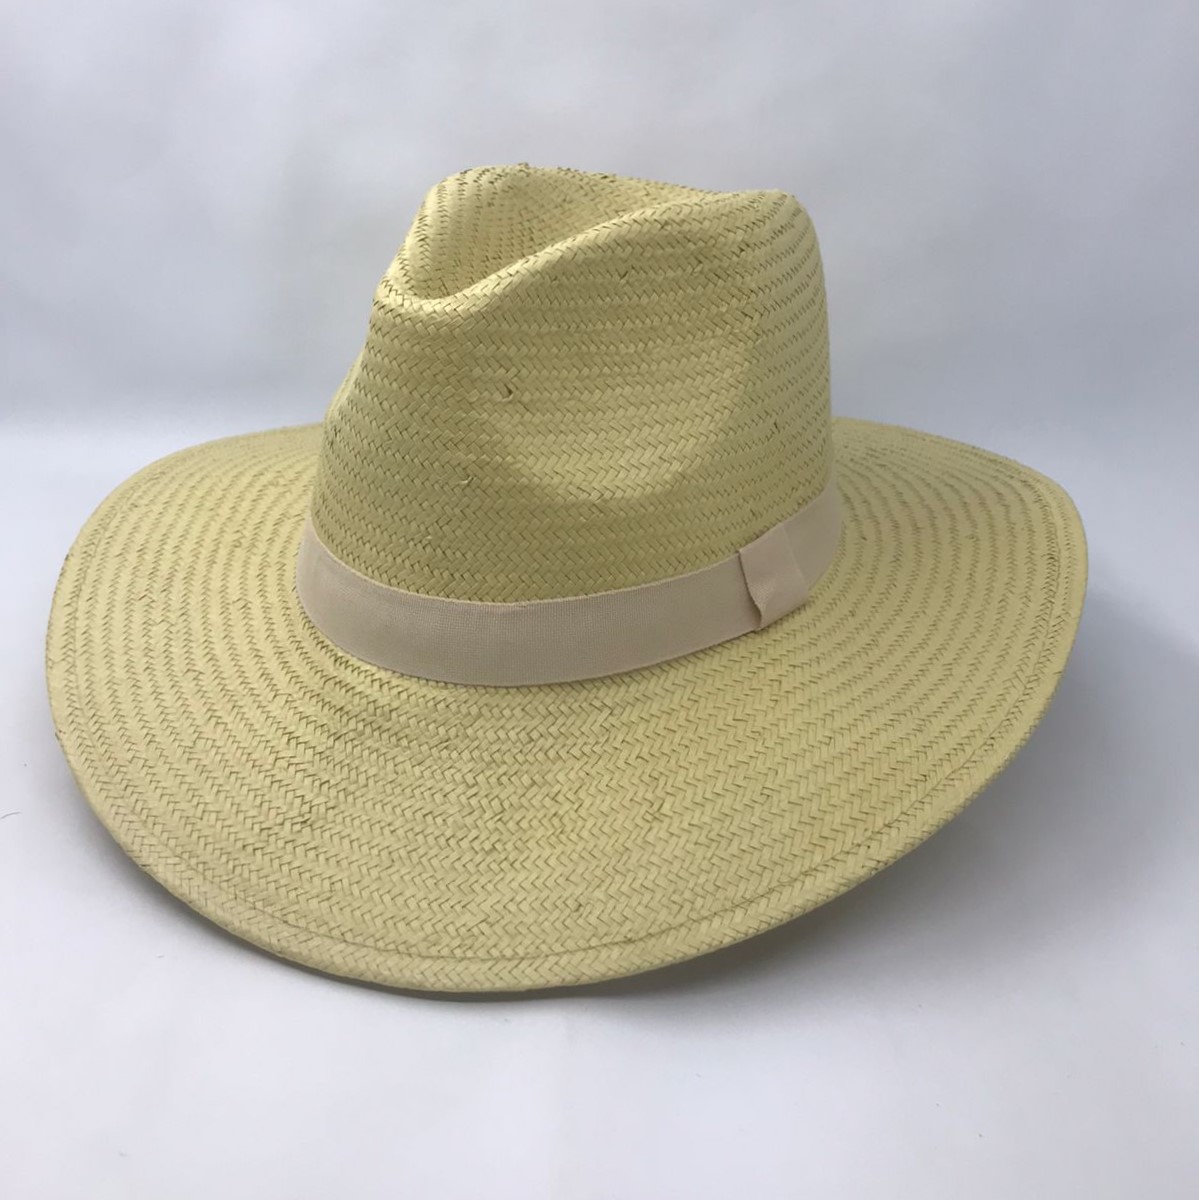 RH09 - Sombrero de Paja